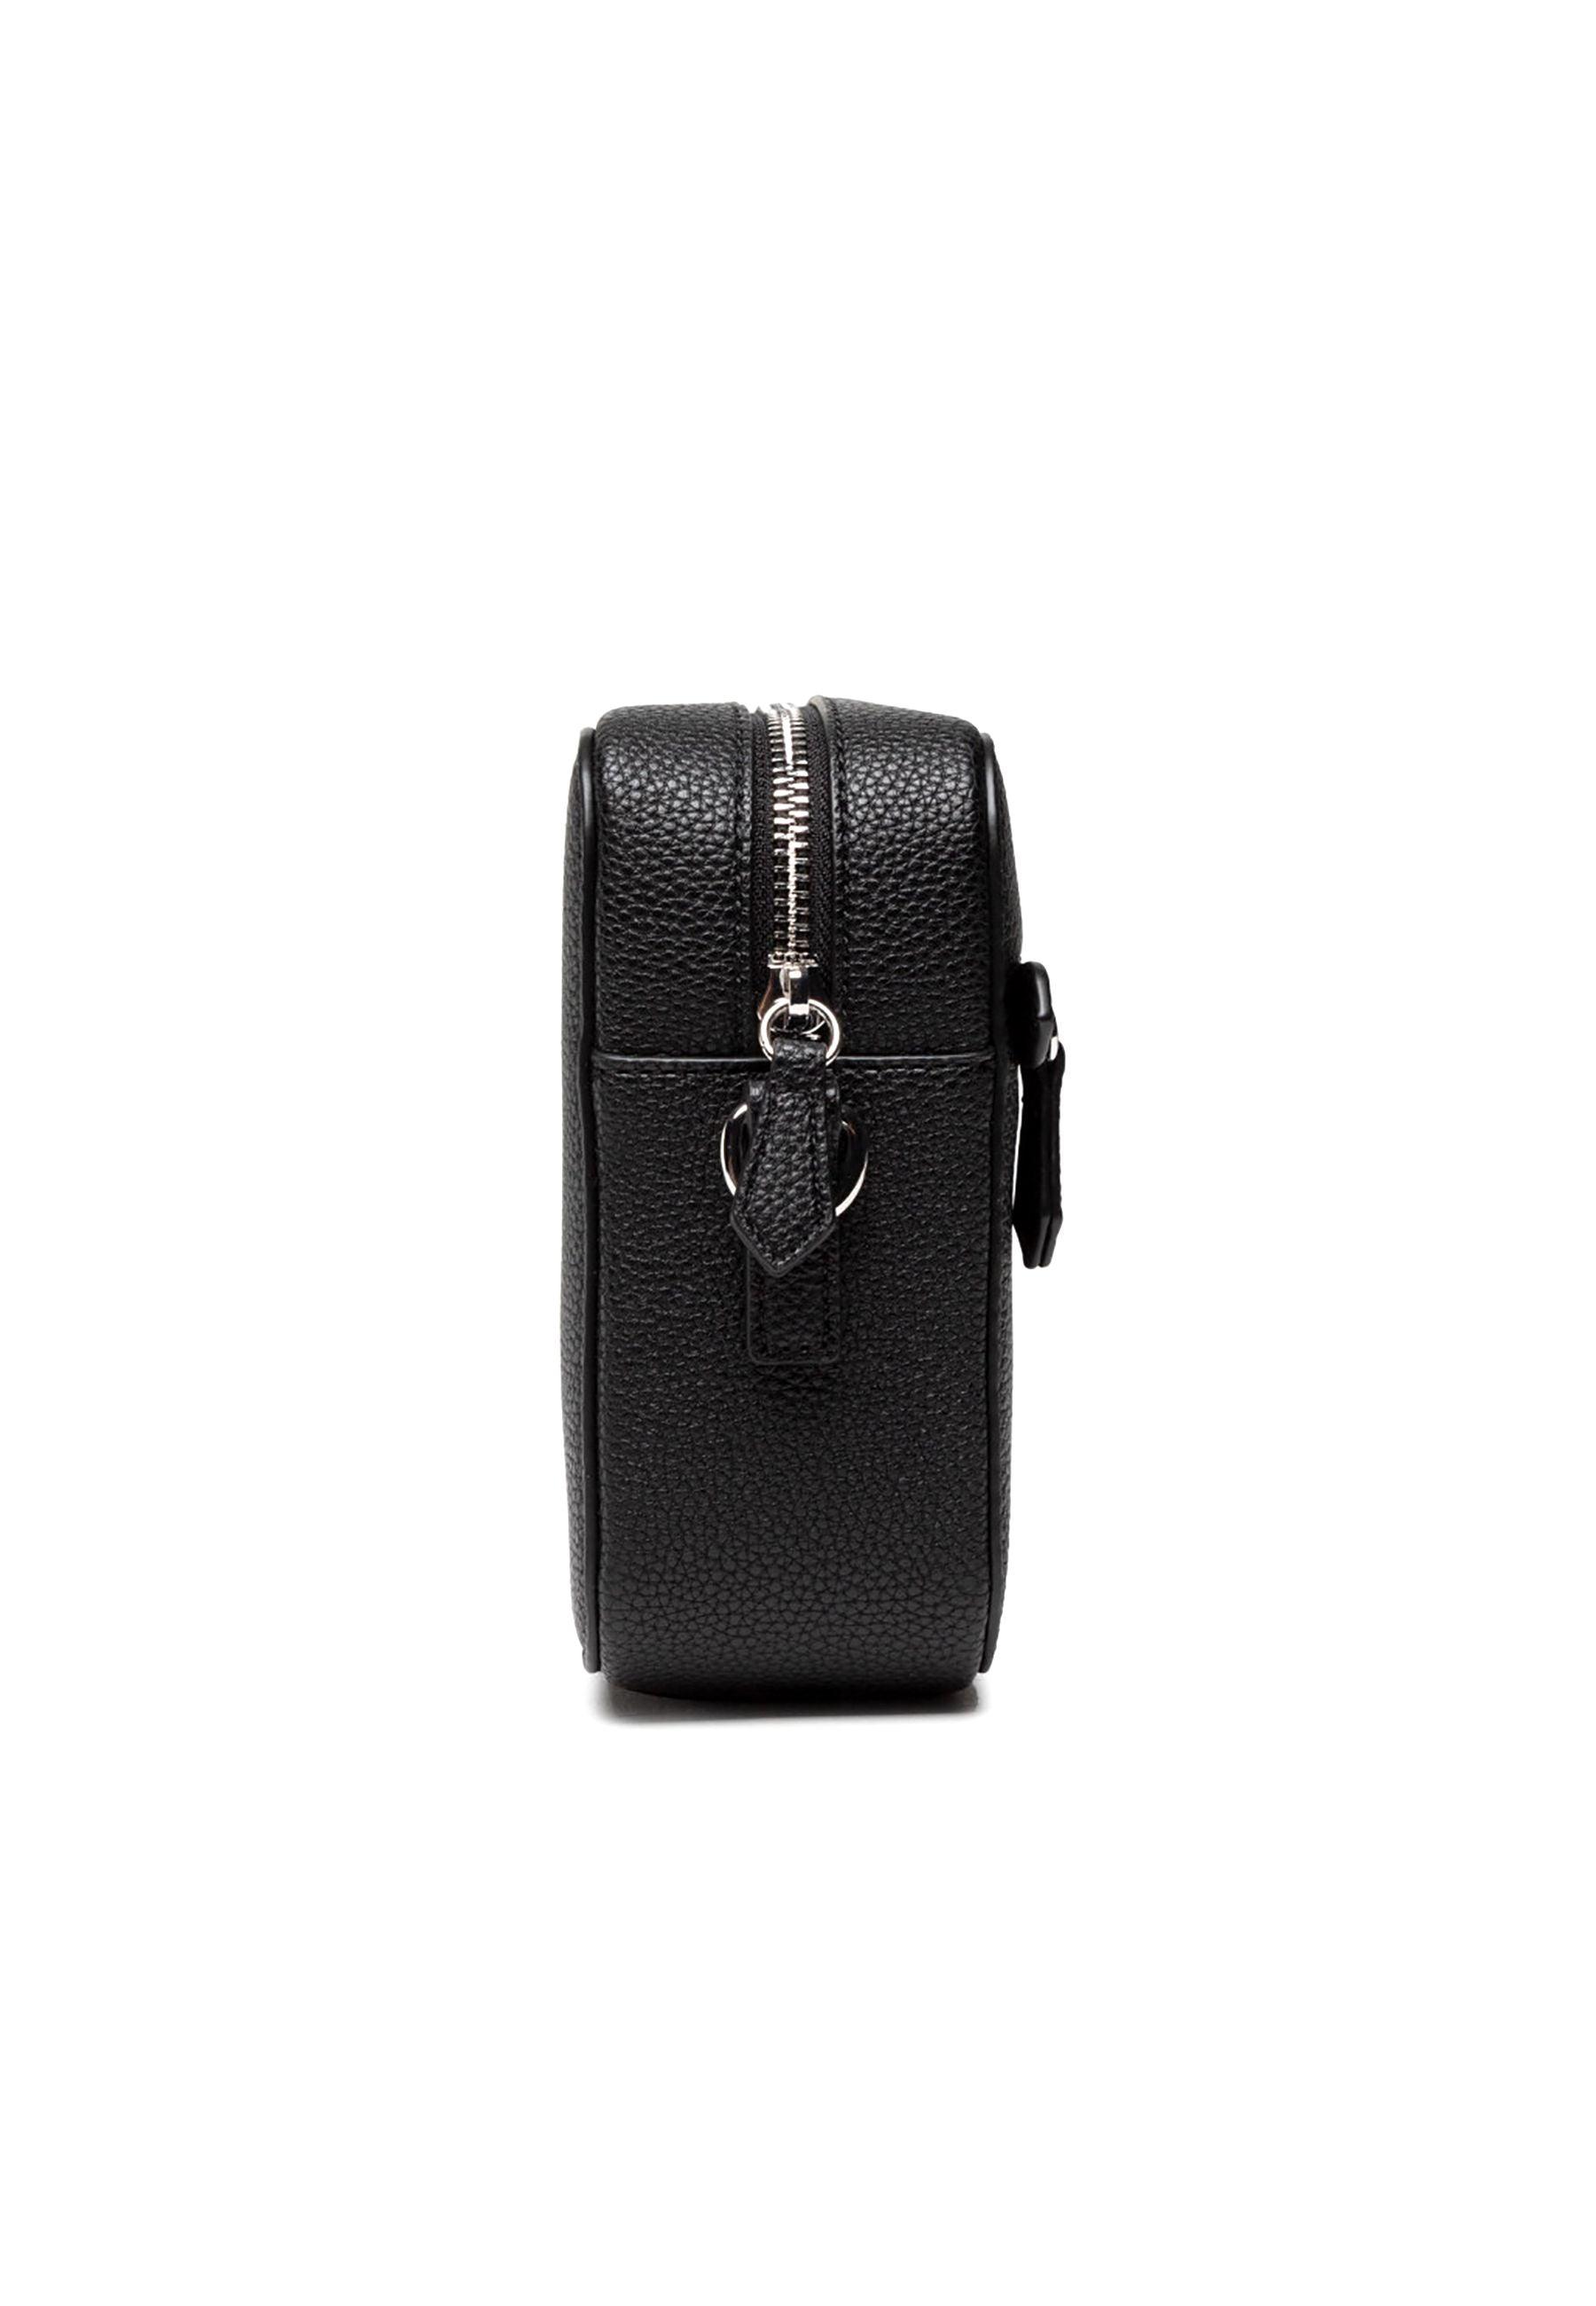 TRUSSARDI New Lily Camera Bag Borsa Black 75B01421 - Sandrini Calzature e Abbigliamento